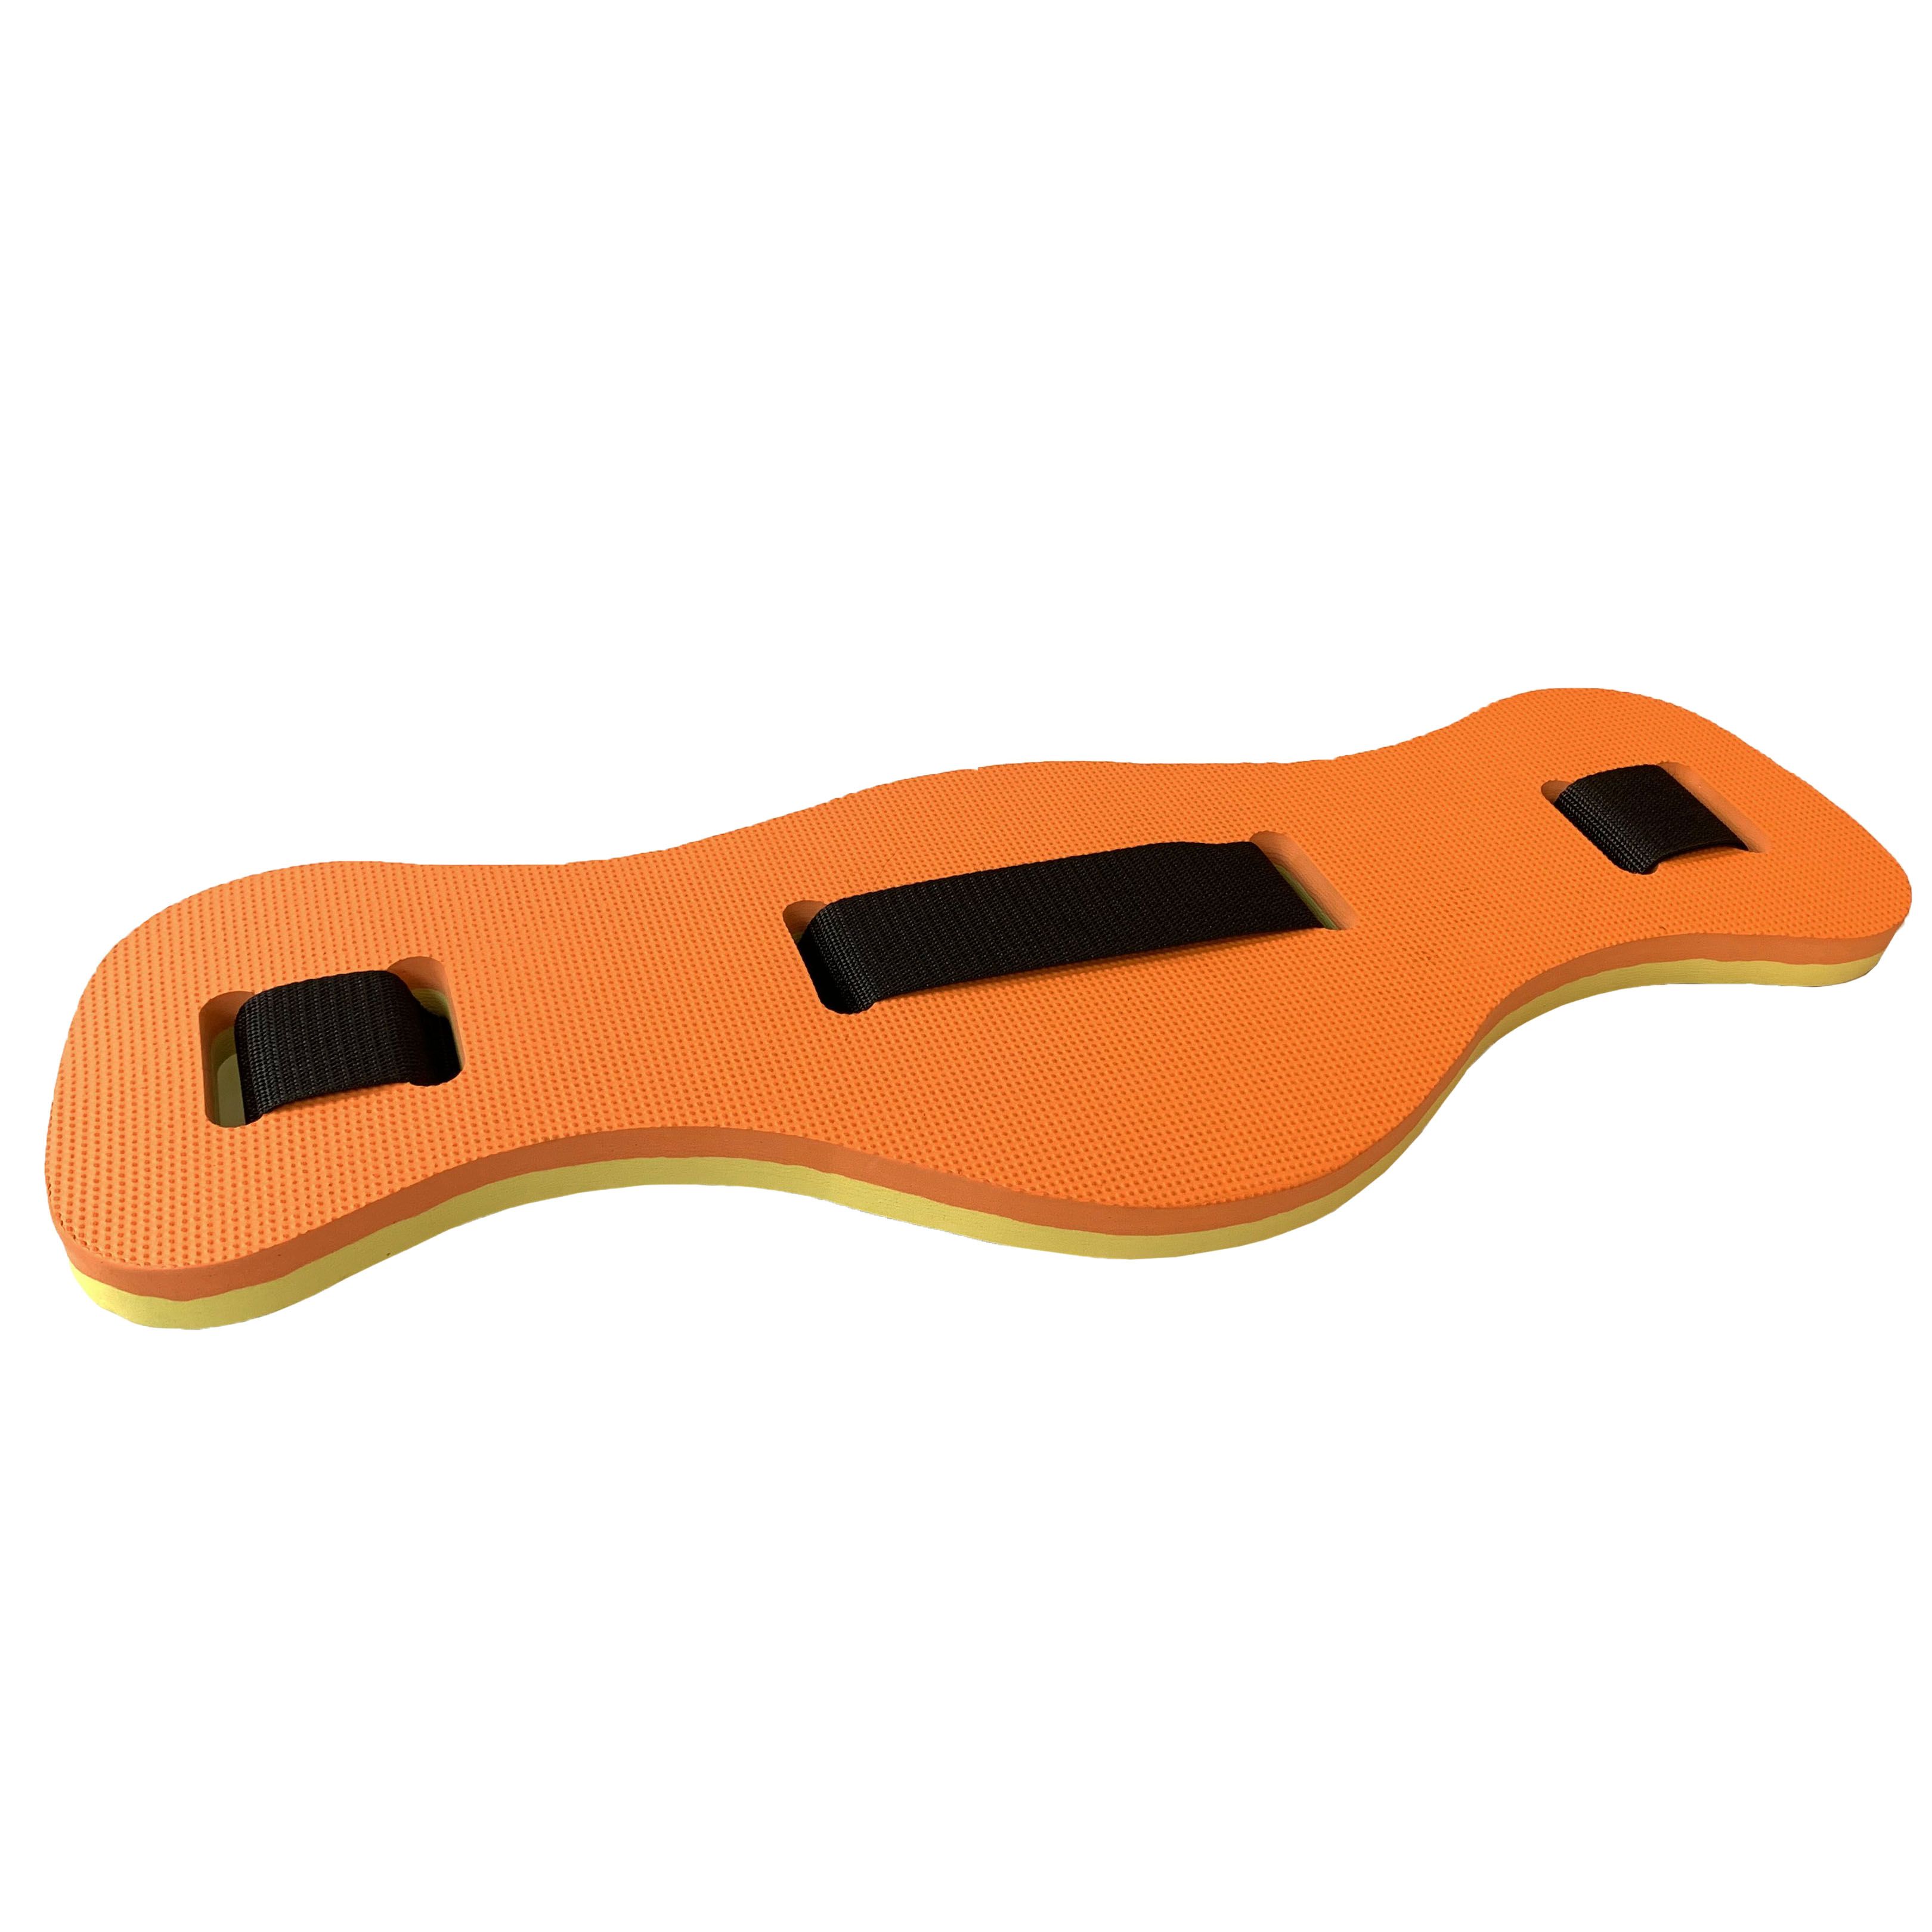 Пояс страховочный 2-х цветный 62х22х2,3 см для аквааэробики E39341 (оранжево/желтый)